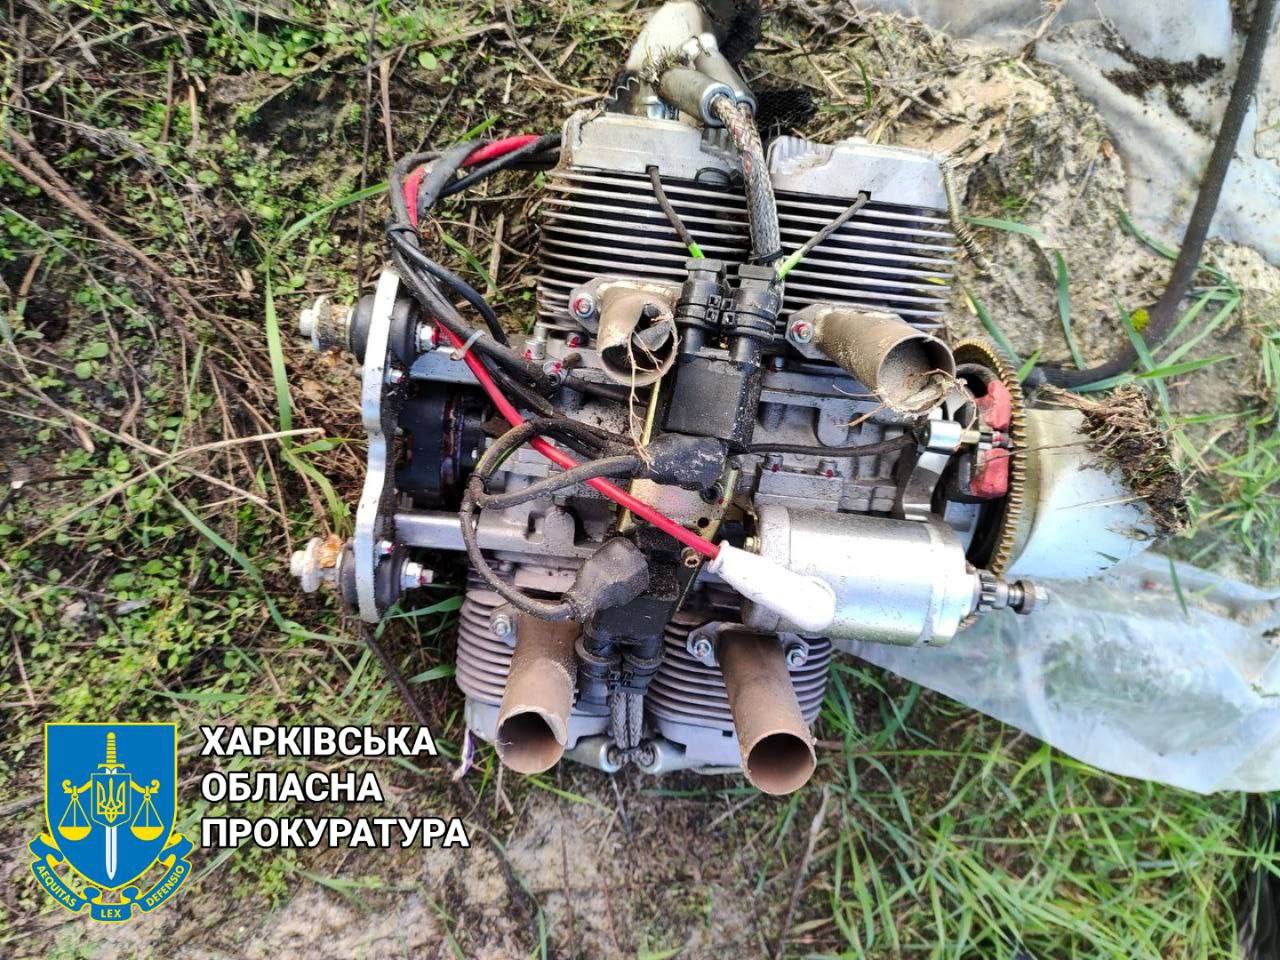 Двигатель дрона-камикадзе в Харькове - фото прокуратуры